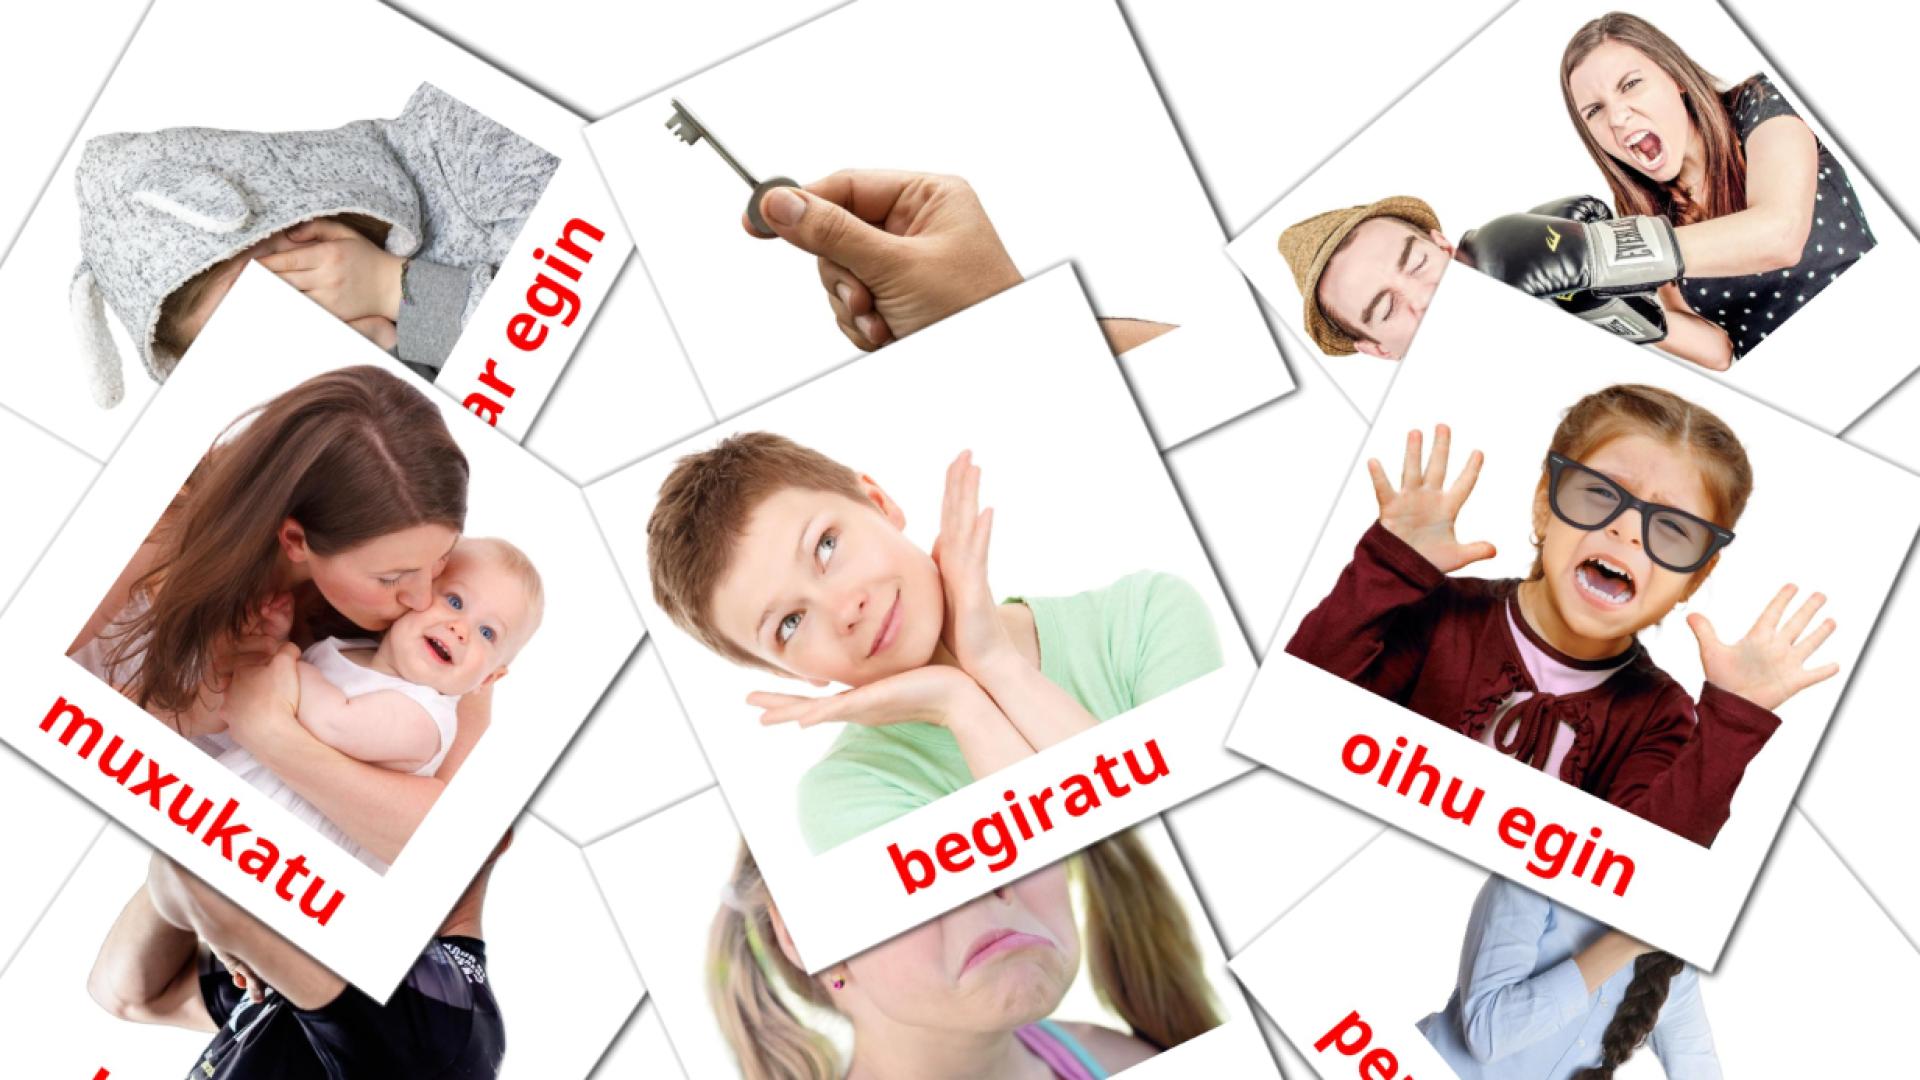 Staat werkwoorden - basque vocabulary cards